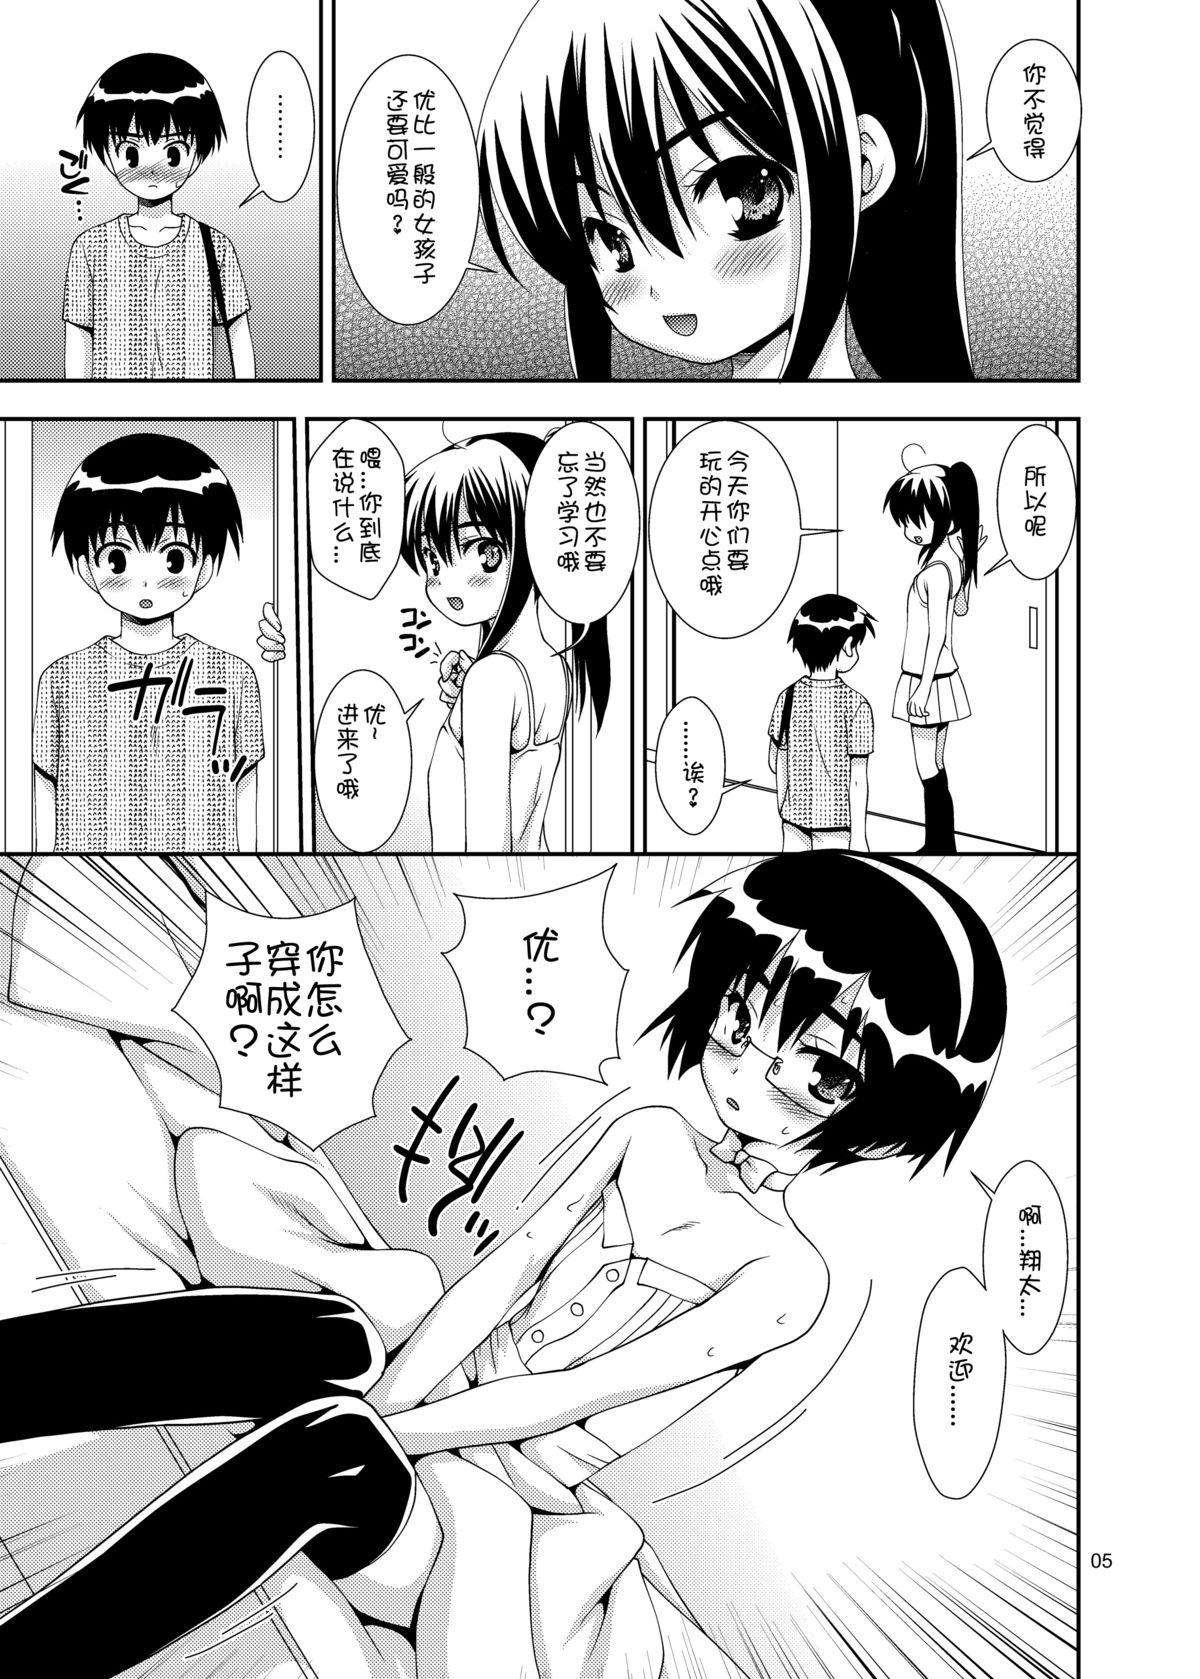 Fucking Girls Osananajimi "Otokonoko-ka" Keikaku Tetas Grandes - Page 4